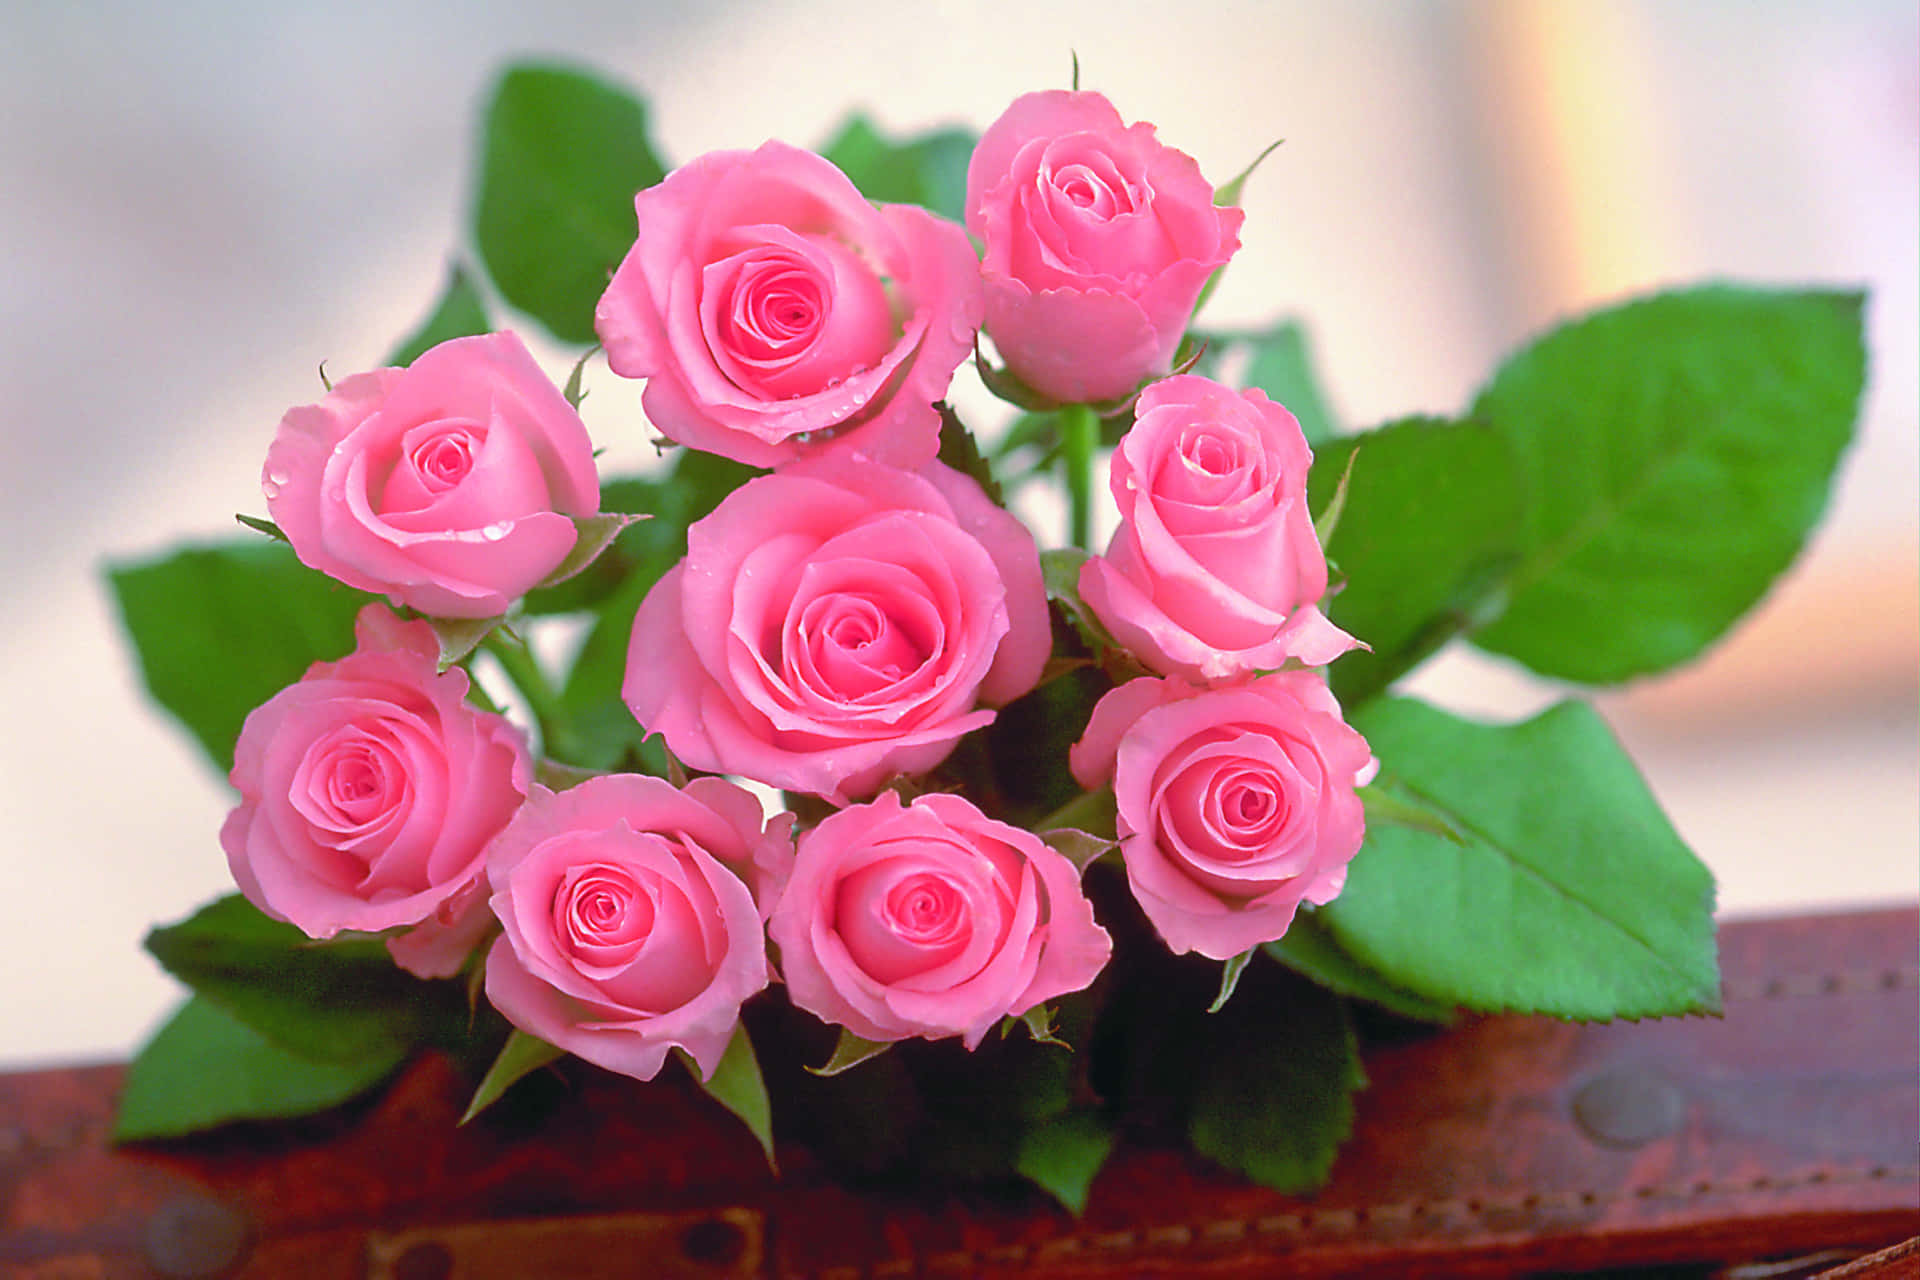 Unadelicada Y Vibrante Flor Rosa.